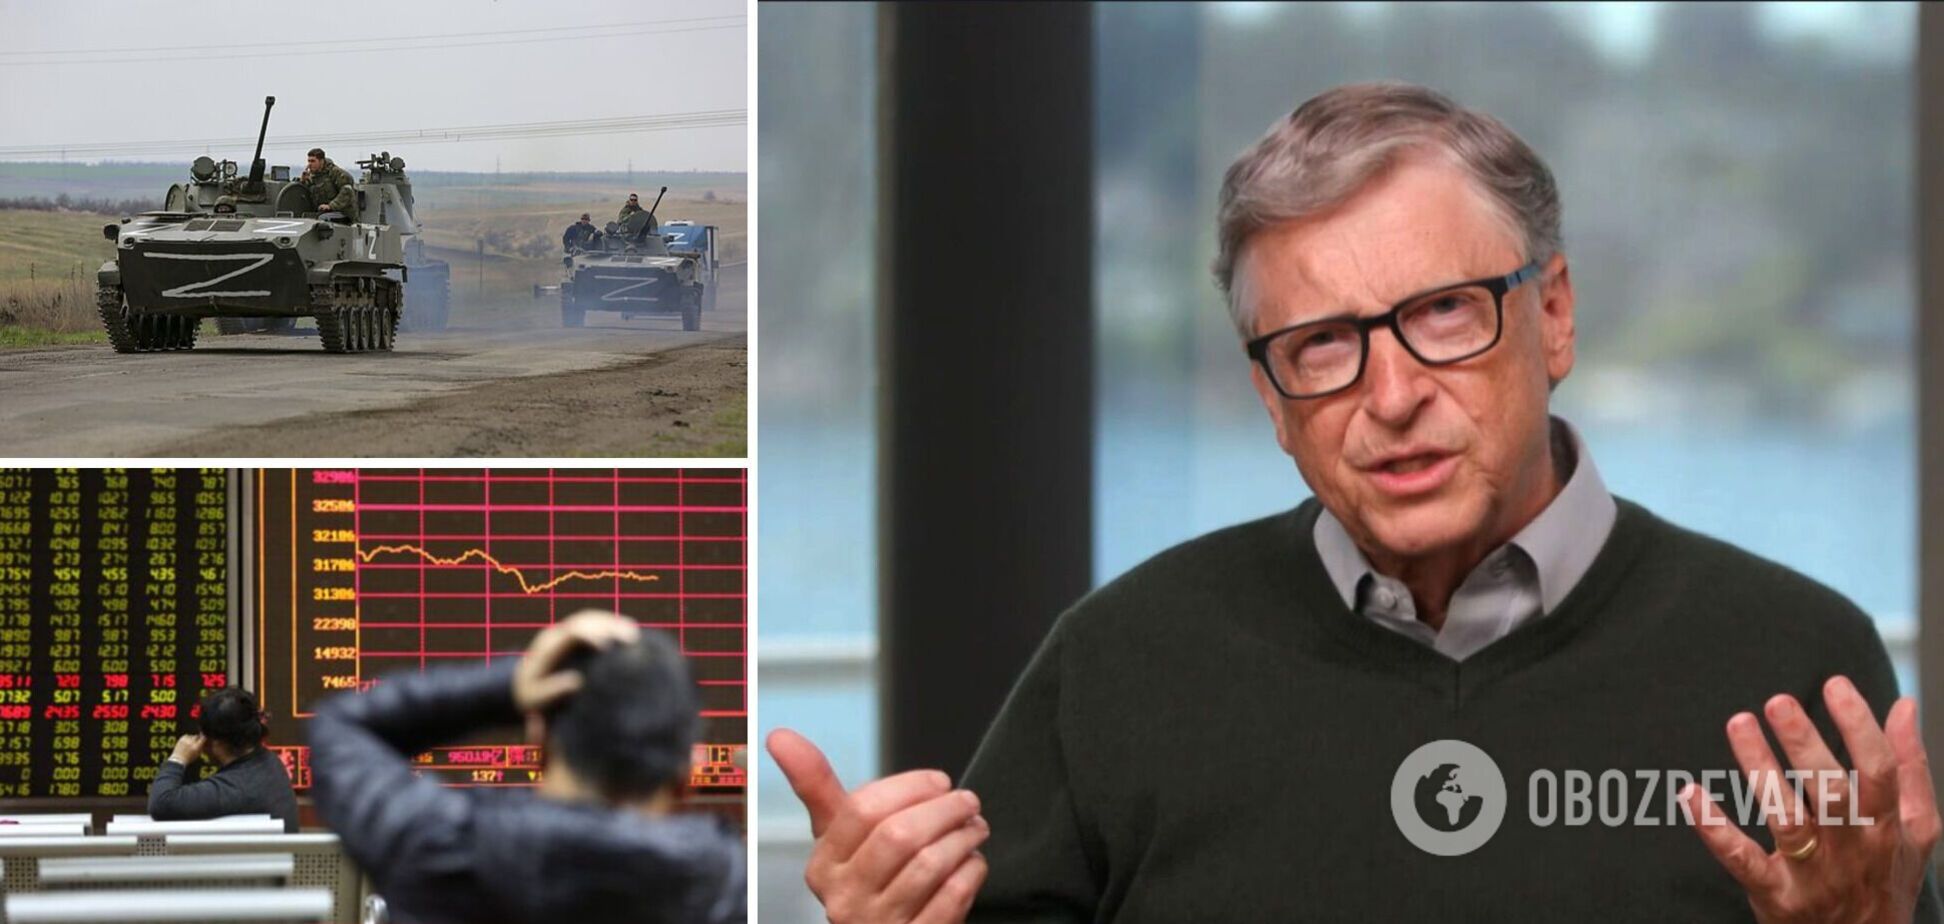 Гейтс прогнозирует мировой экономический спад из-за войны в Украине, которую развернула РФ